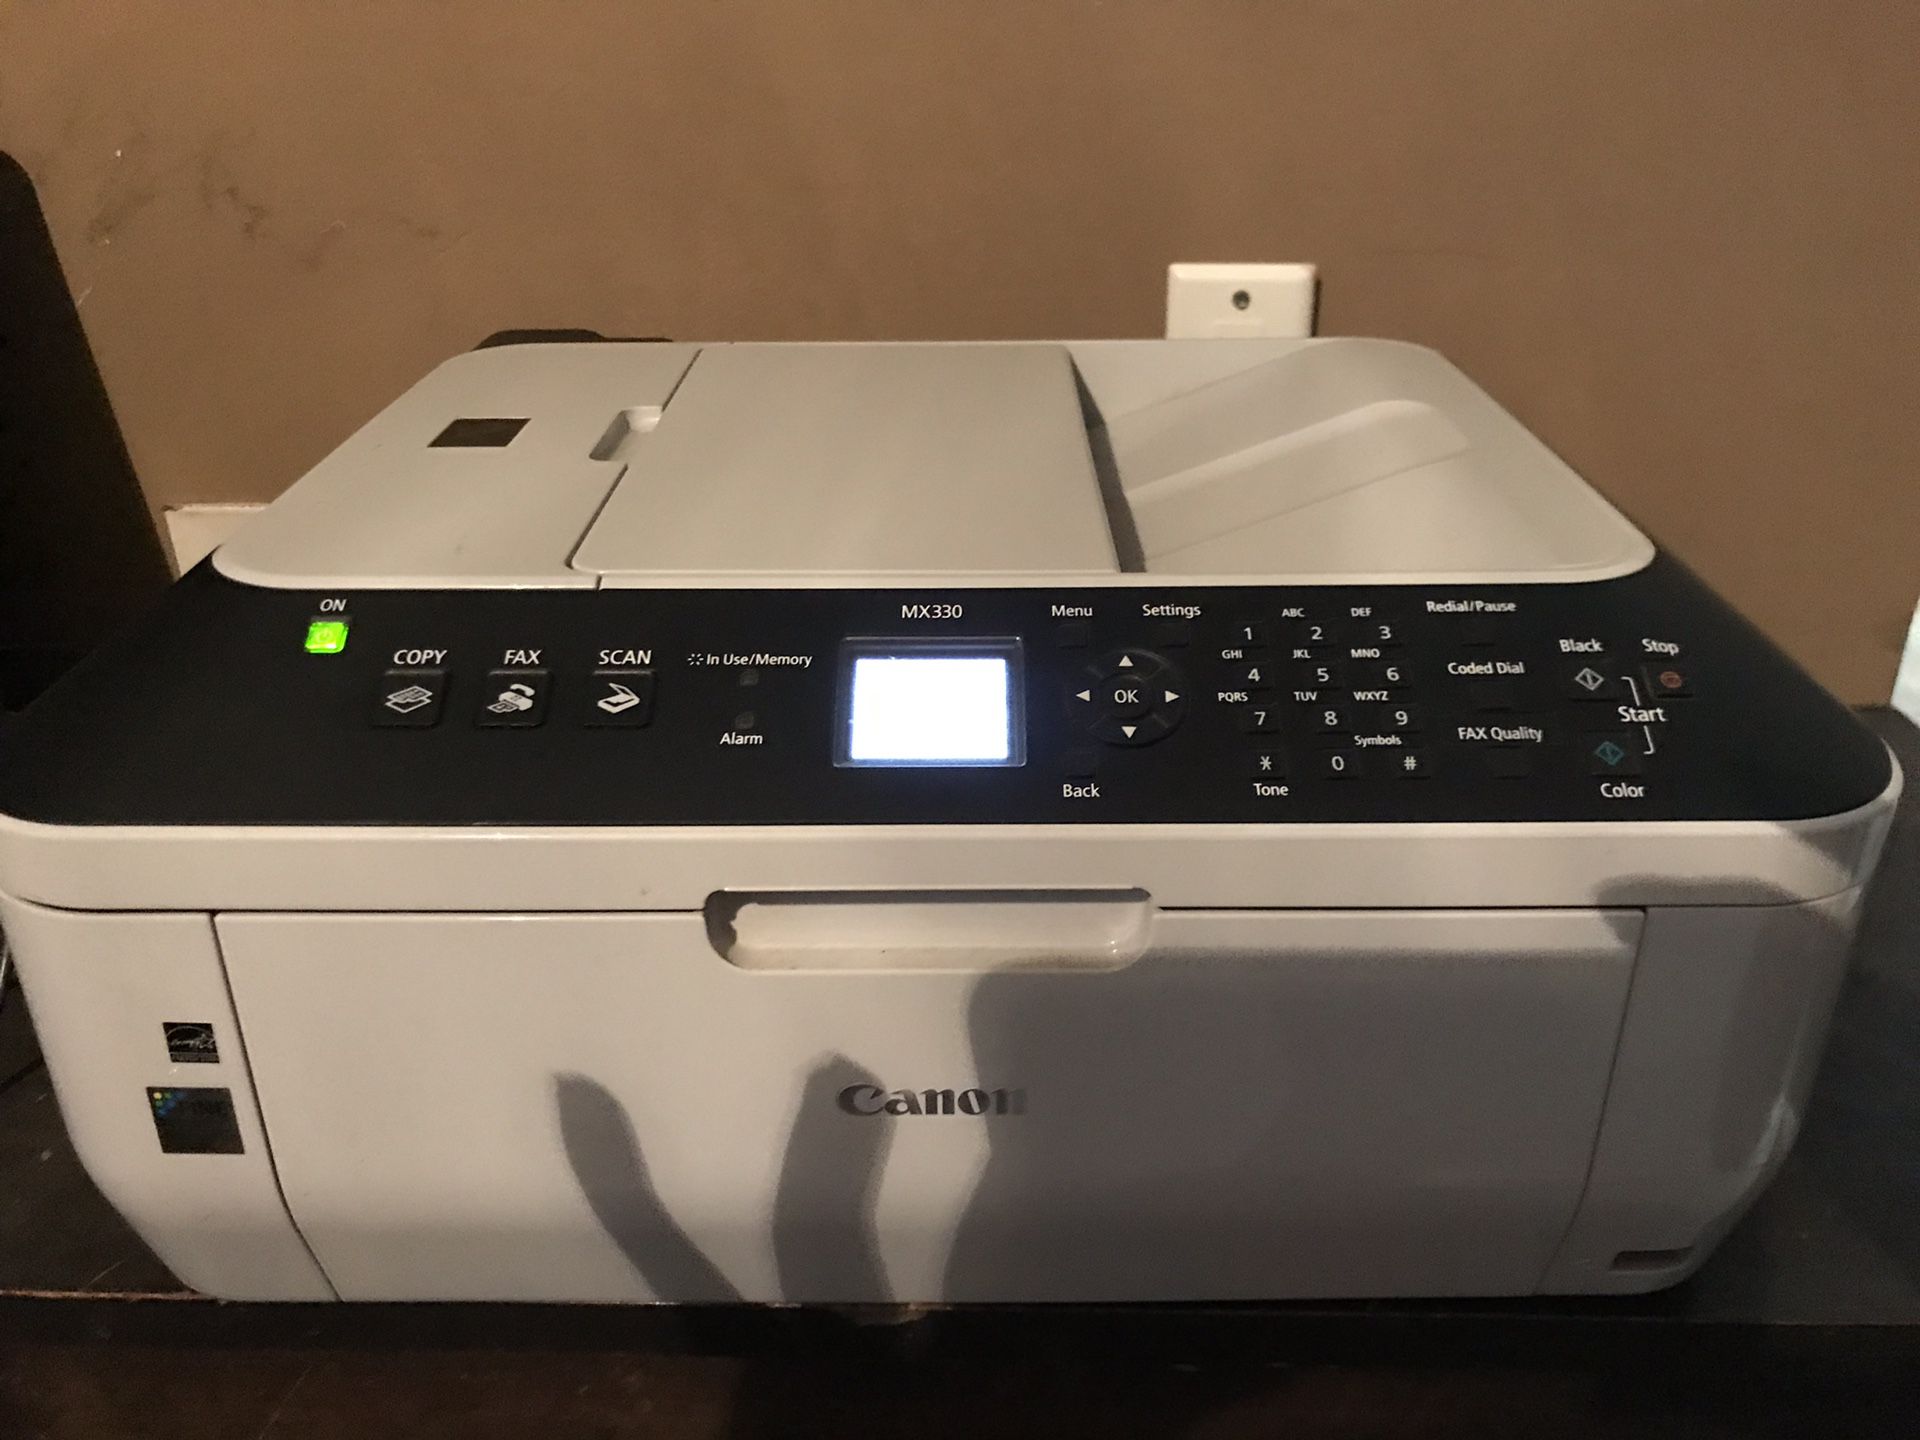 Canon printer/fax/scanner/copier